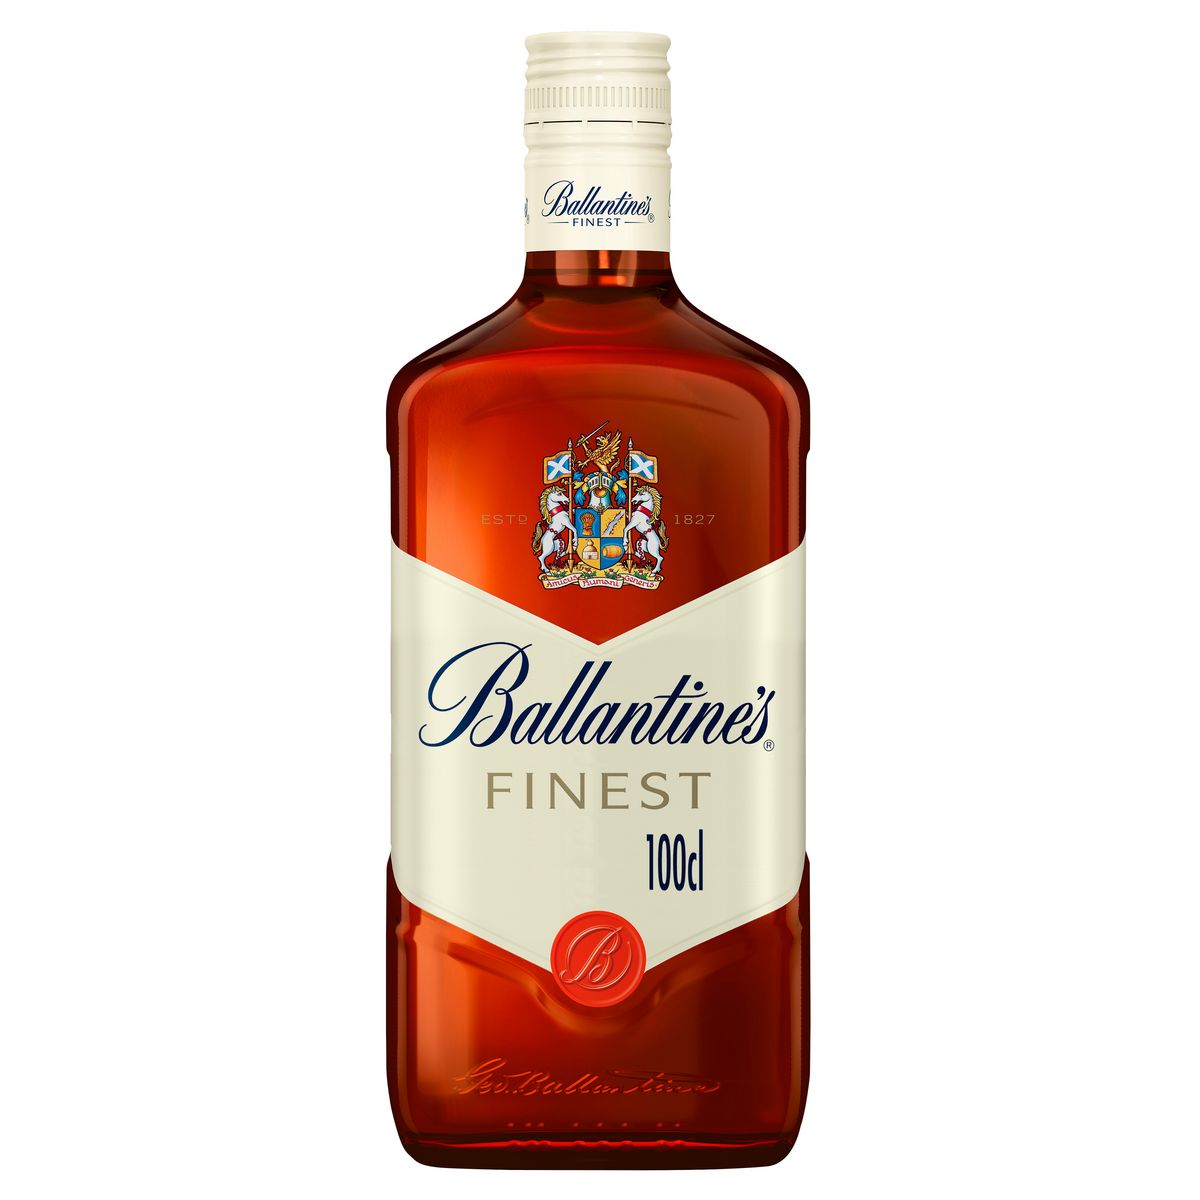 BALLANTINES Scotch whisky écossais blended malt 40% 1l pas cher